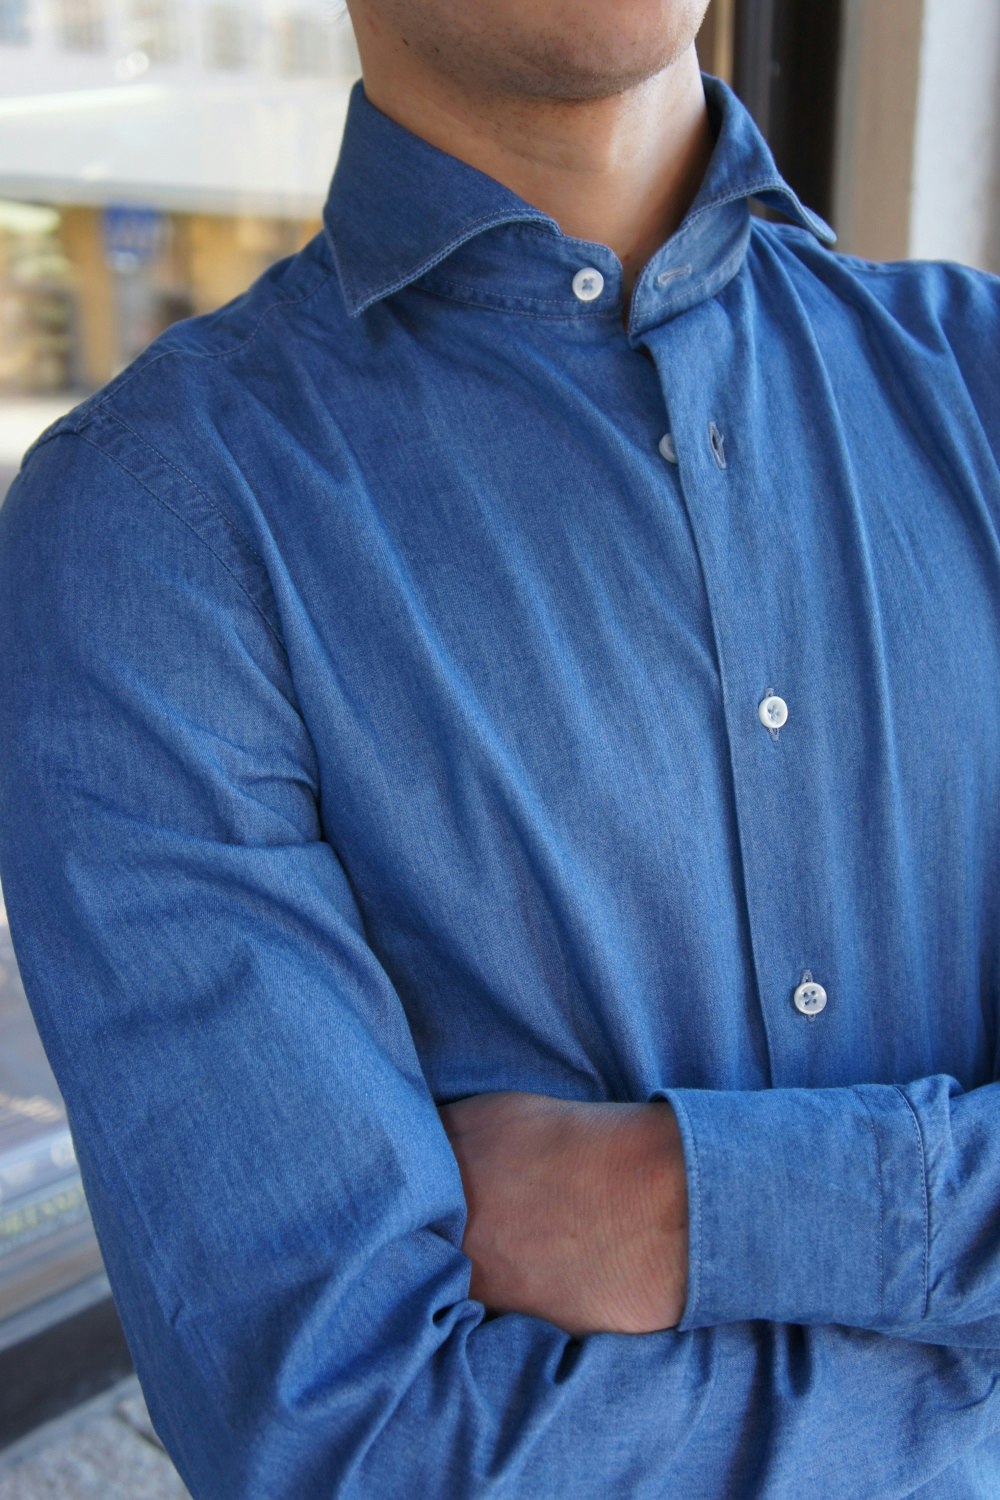 Enfärgad Denimskjorta - Cutaway - Mellanblå